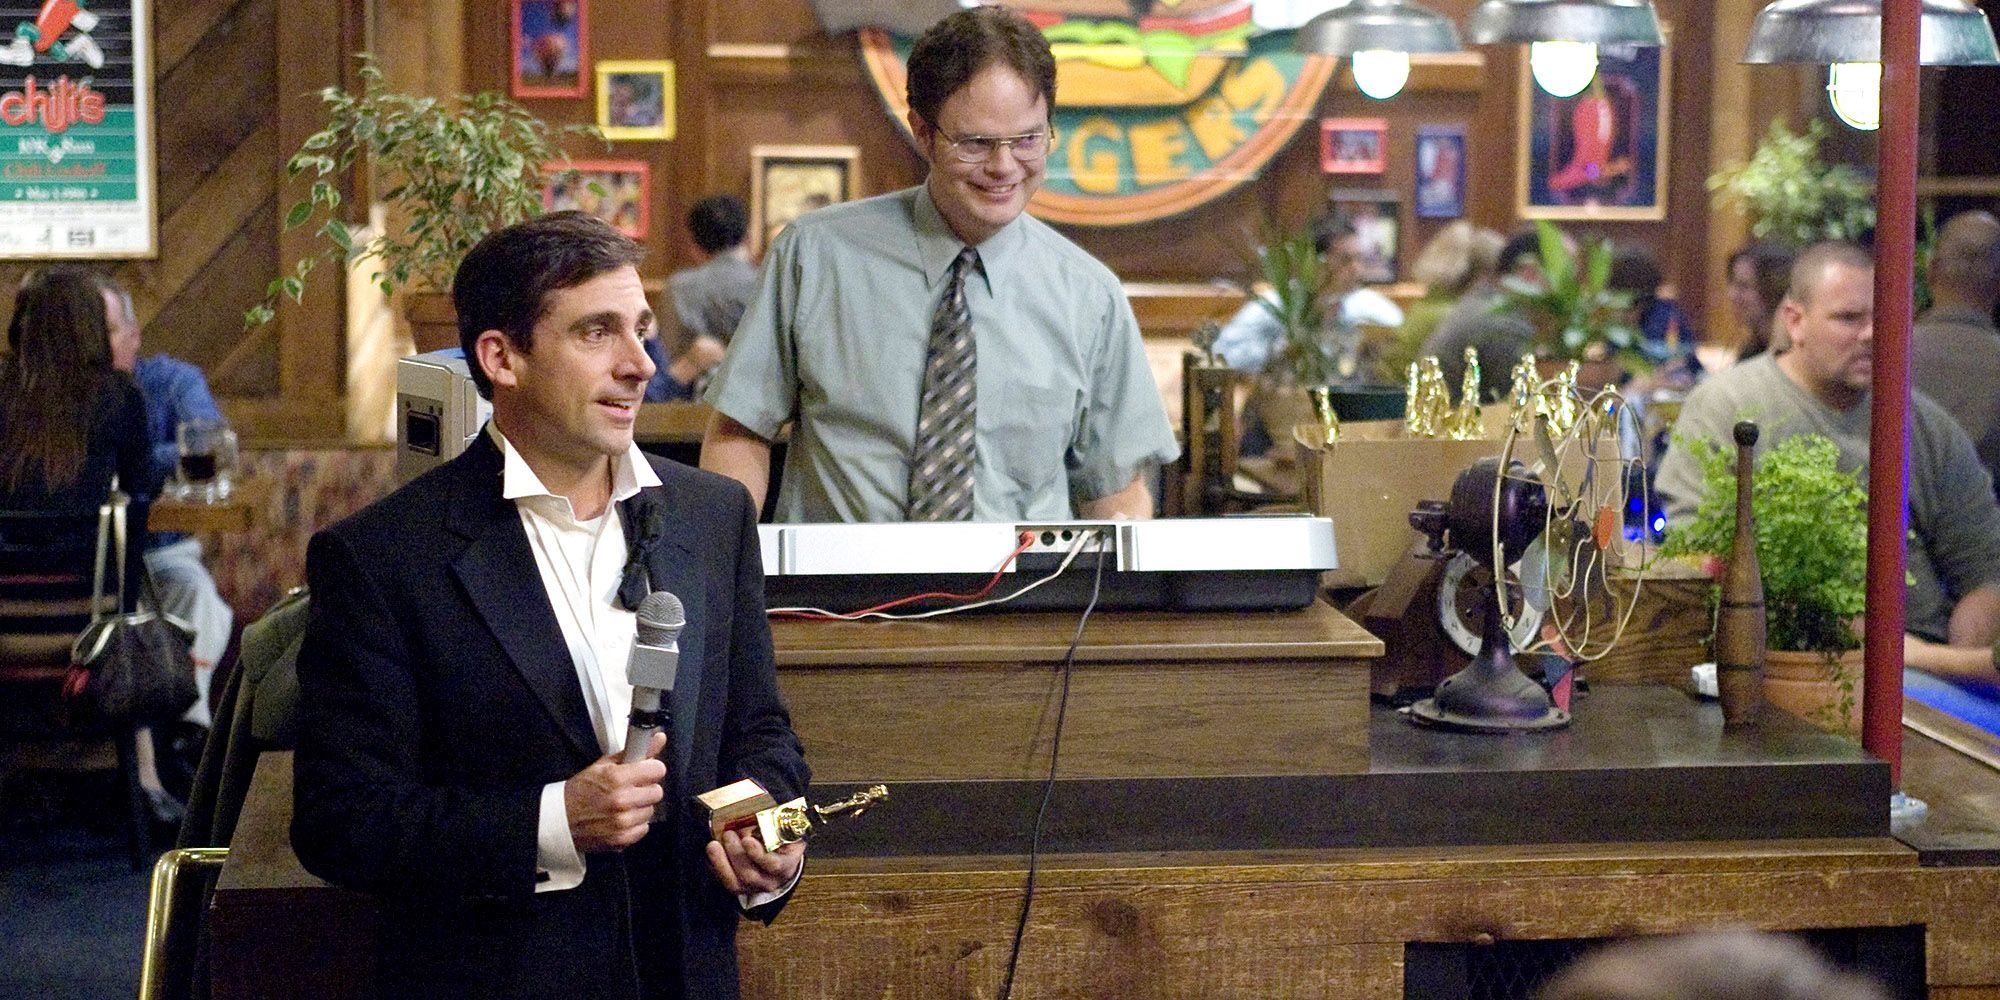 Dwight The Office'teki Dundies'de sunuculuk yaparken Michael elinde bir Dundie tutuyor.